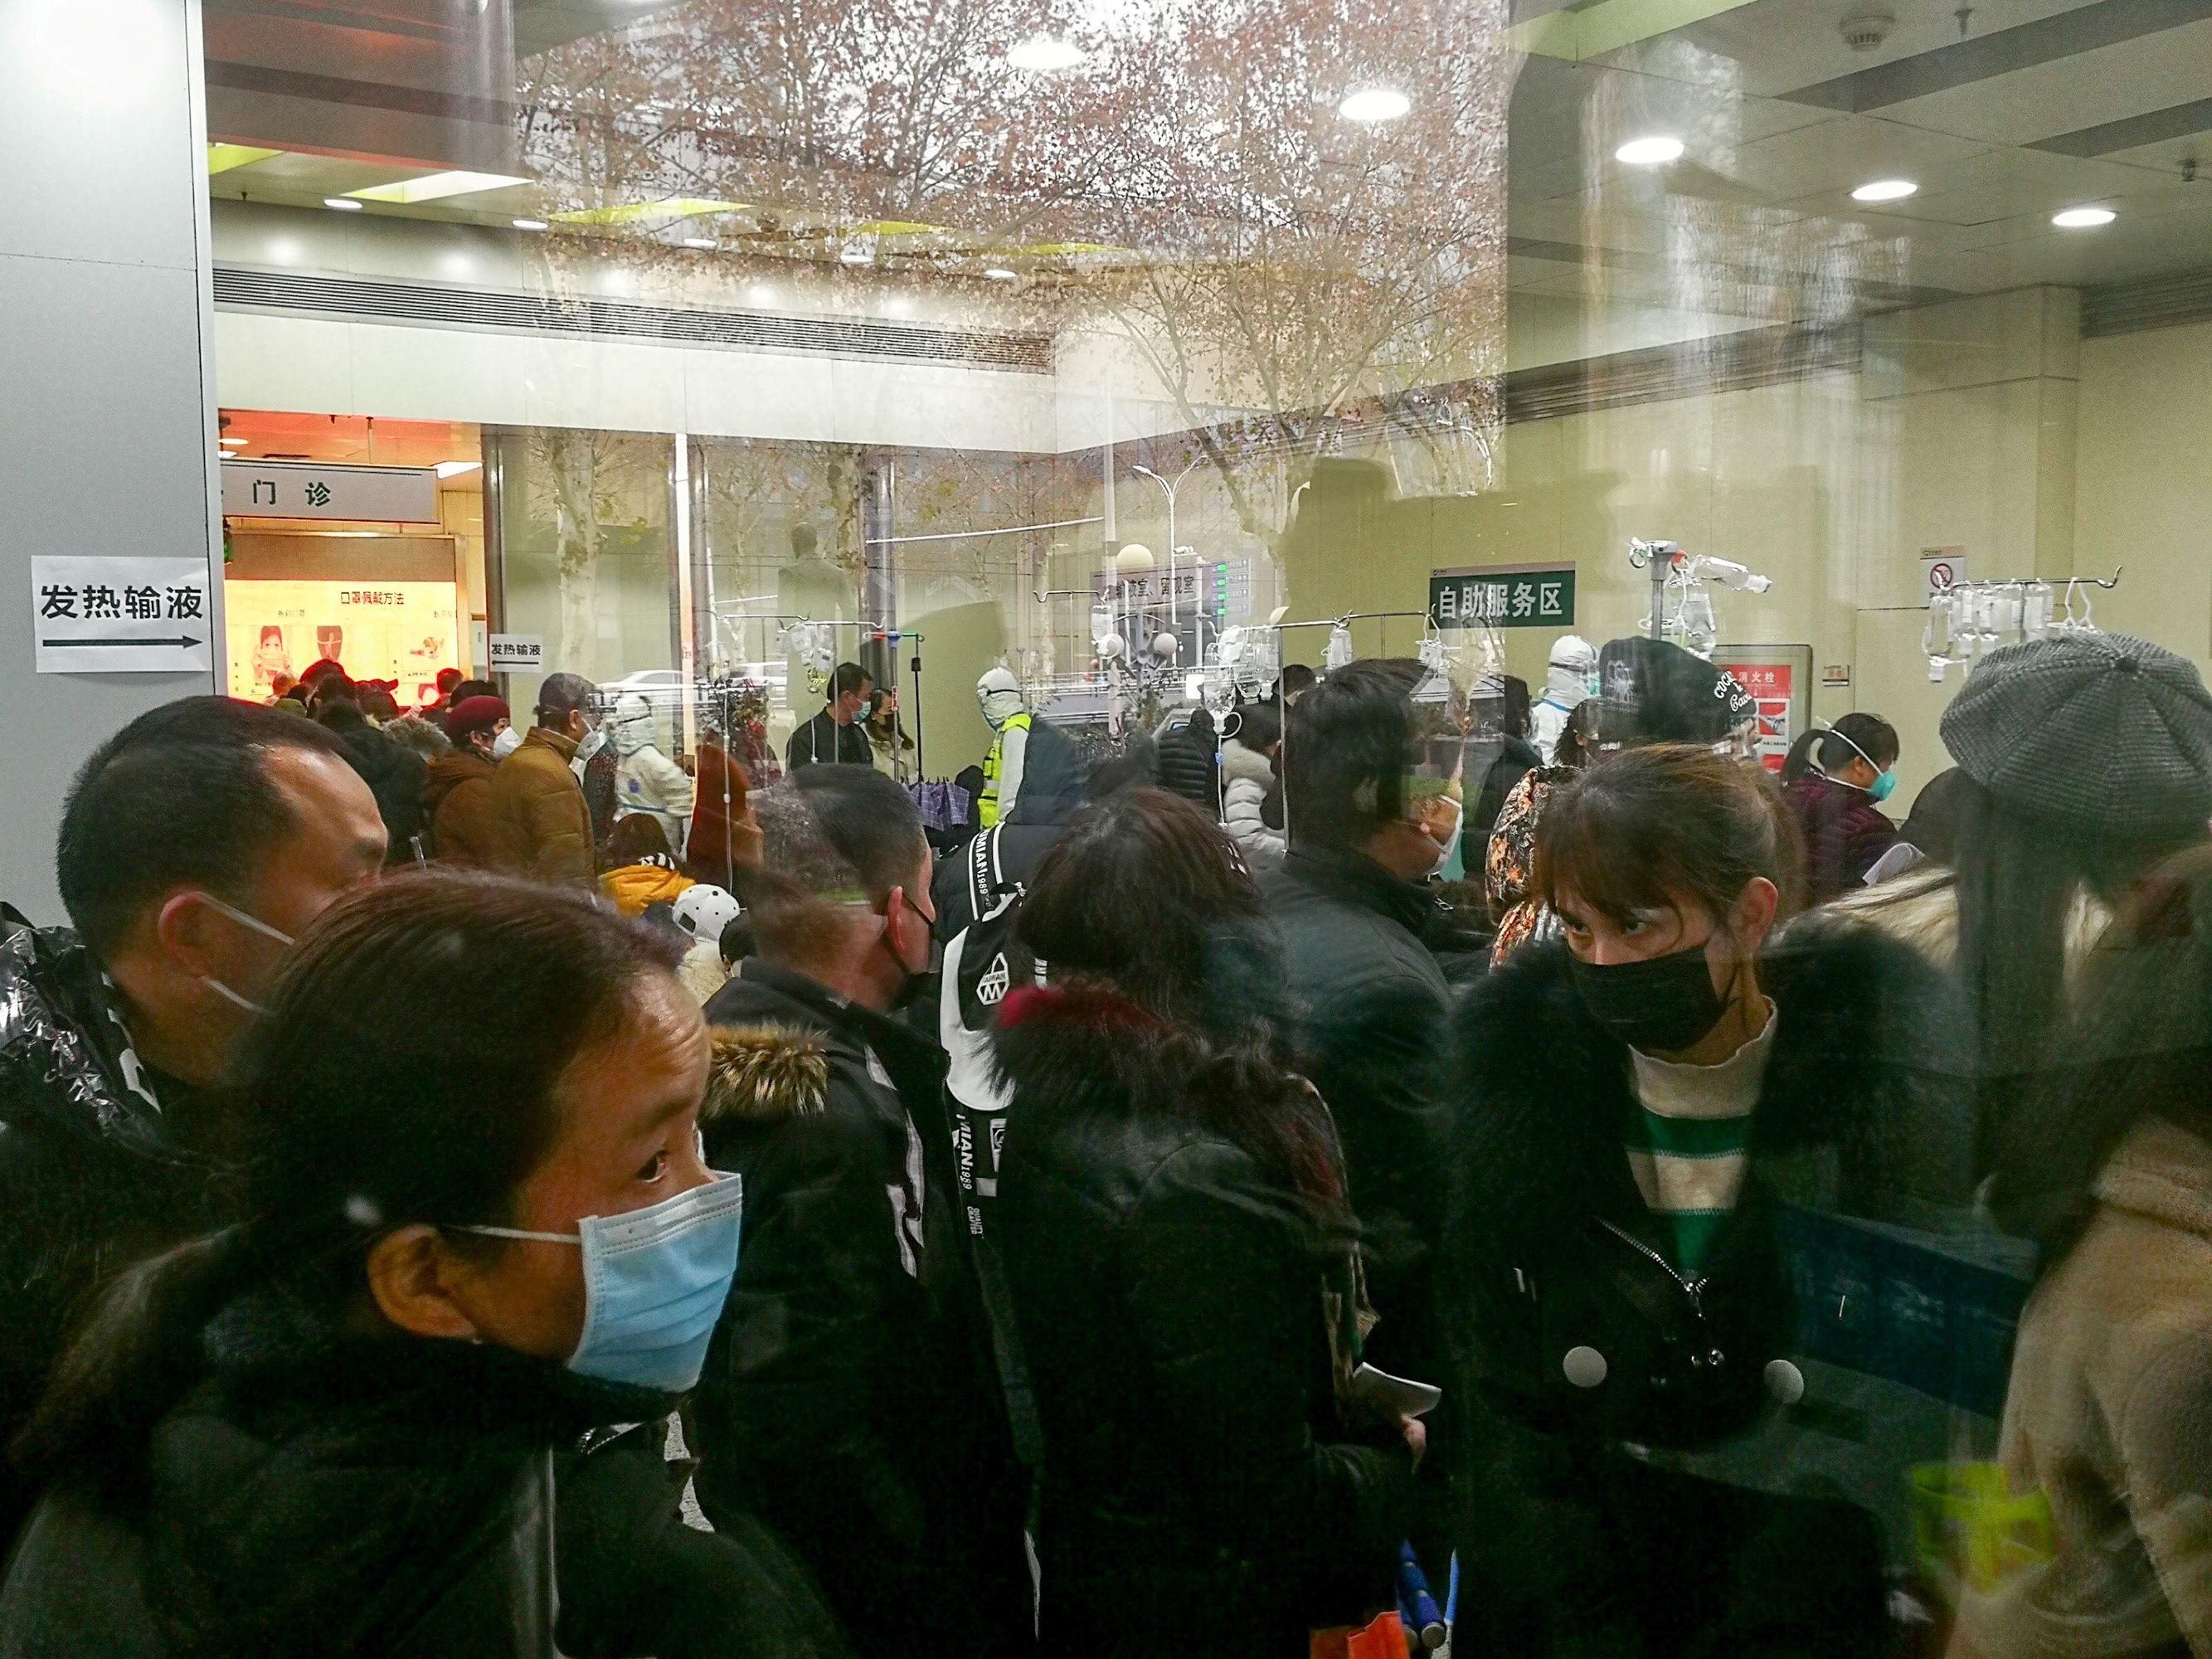 El sistema de salud chino está bajo una enorme presión y en los hospitales como el Tongji de Wuhan hay largas filas de personas a la espera de atención. (cnsphoto via REUTERS)